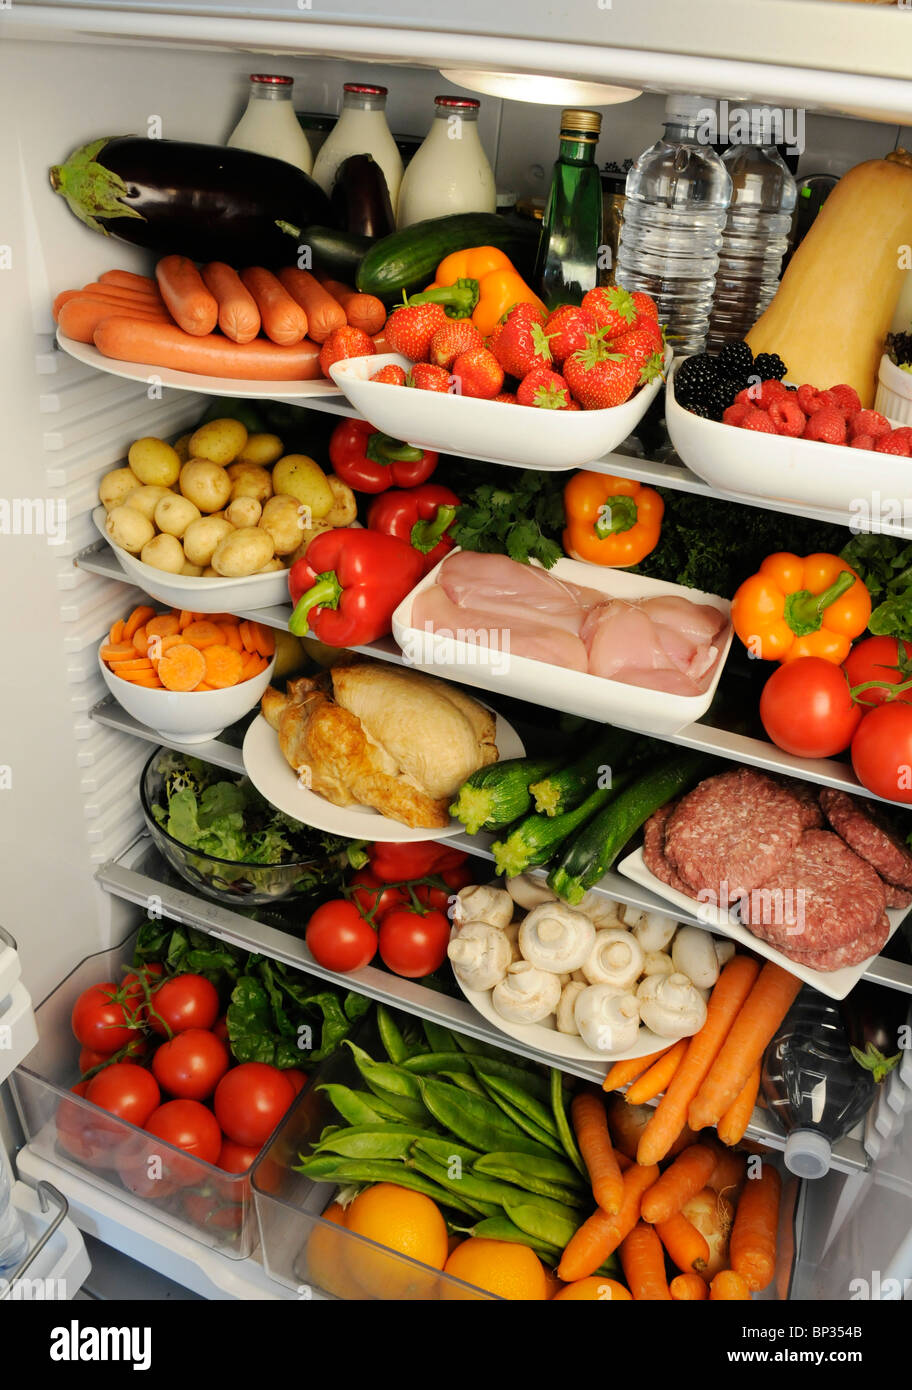 VIEW all'interno del frigorifero con ripiani riempito con cibo fresco Foto Stock